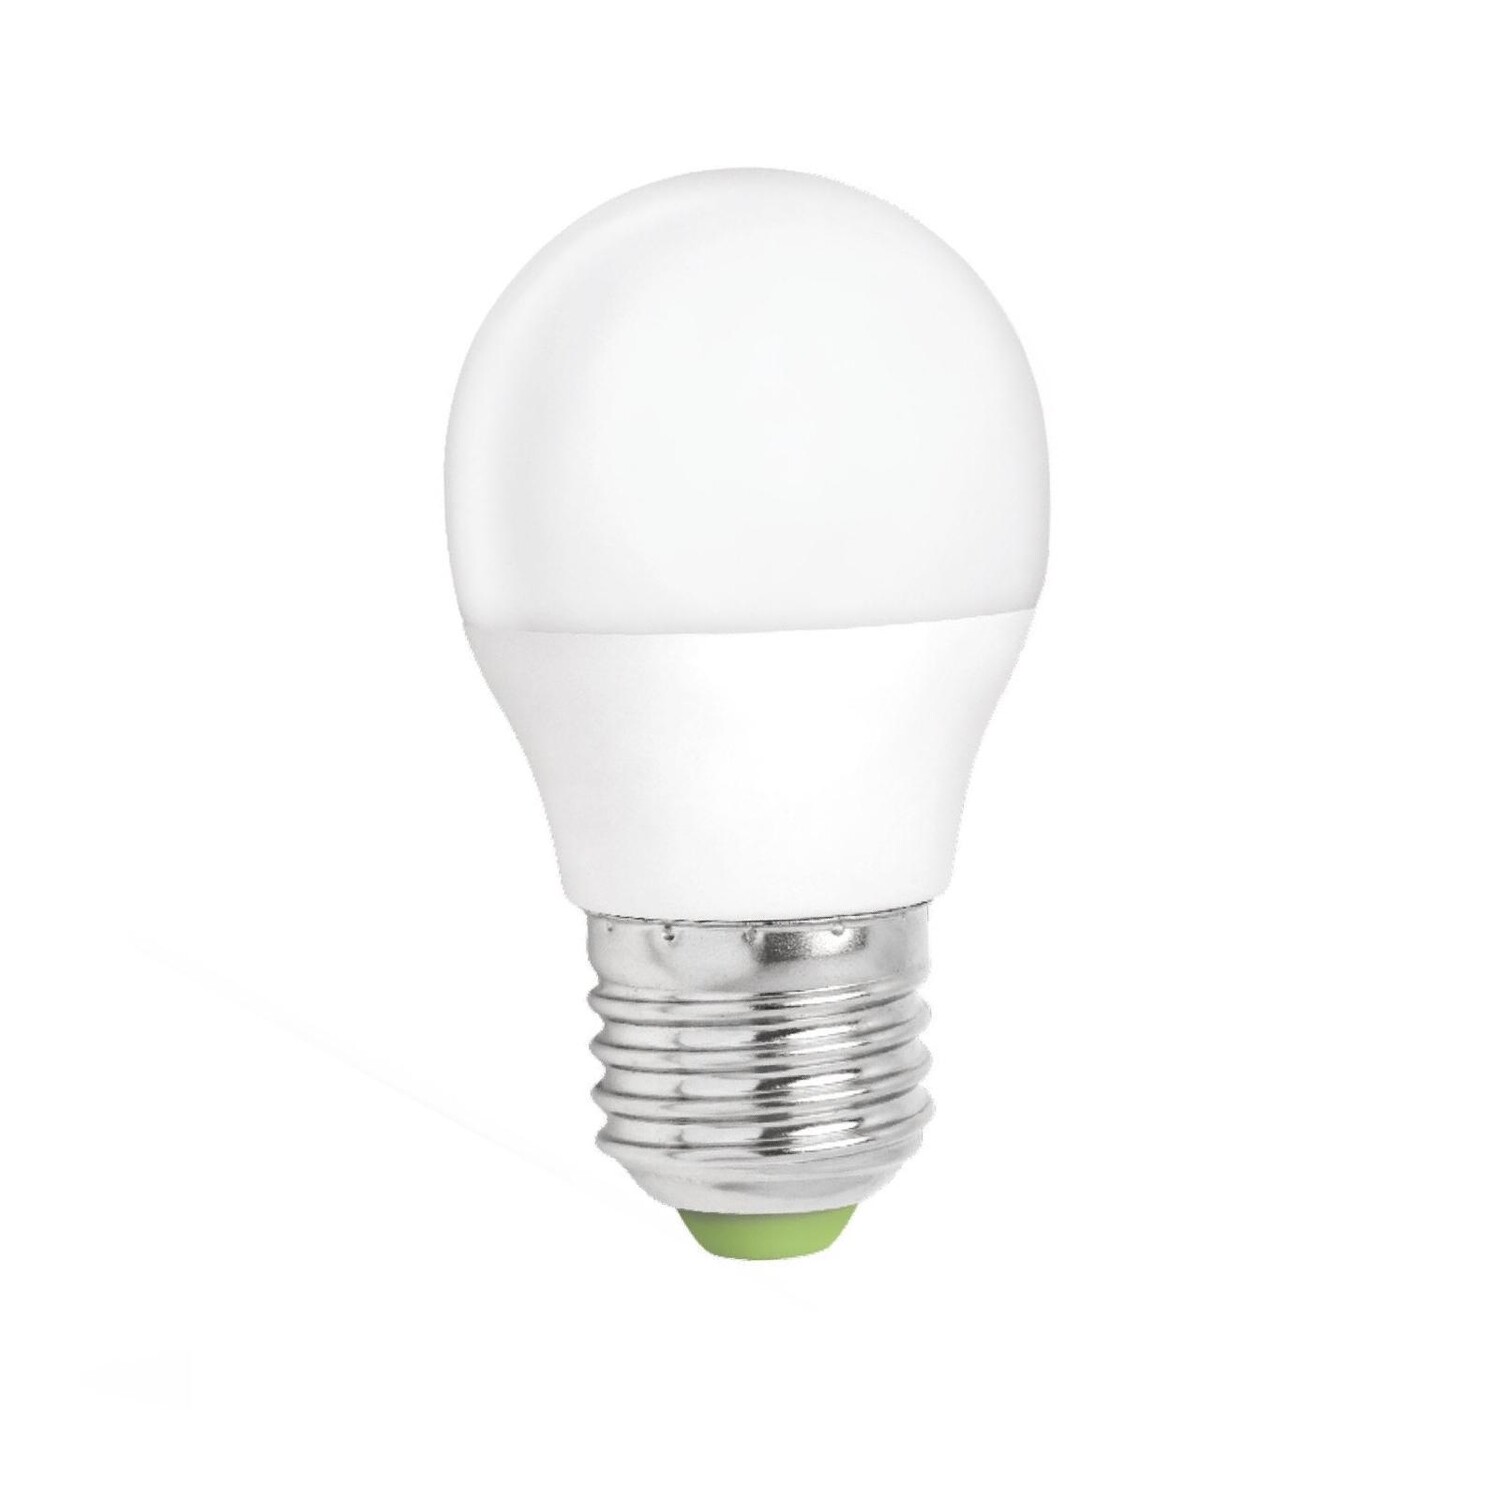 LED Lampe dimmbar - E27 Sockel - 5W entspricht 45W - Warmweiß 3000K | Standleuchten